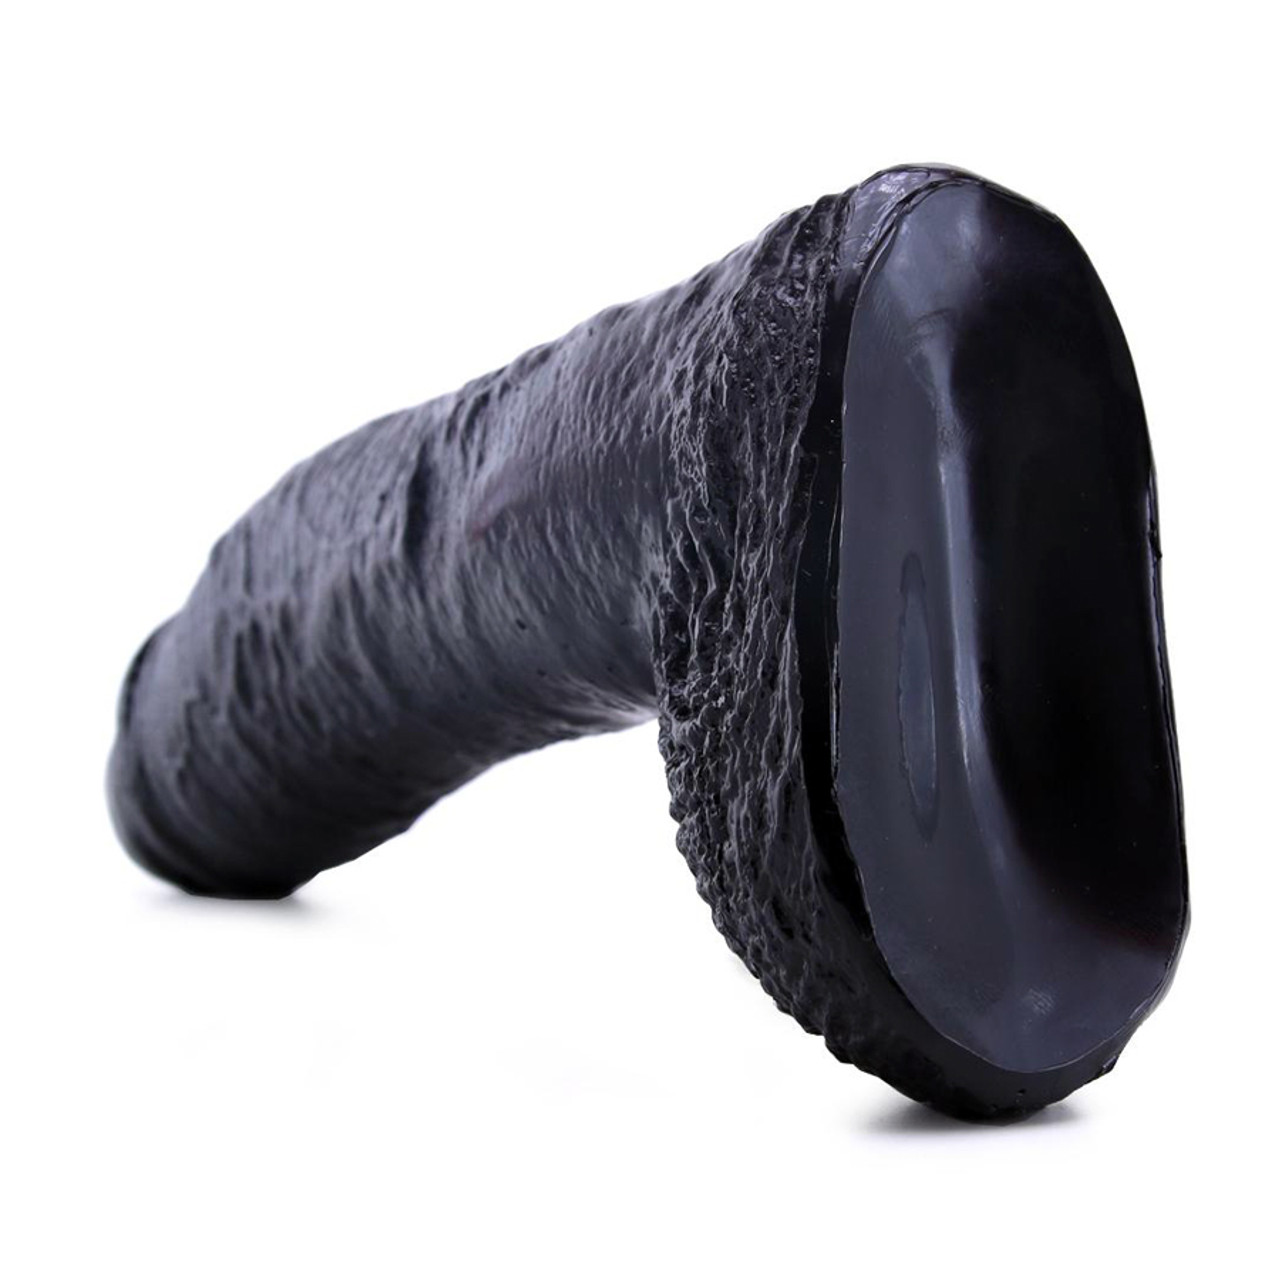 catherine anne enriquez recommends big black rubber dildo pic